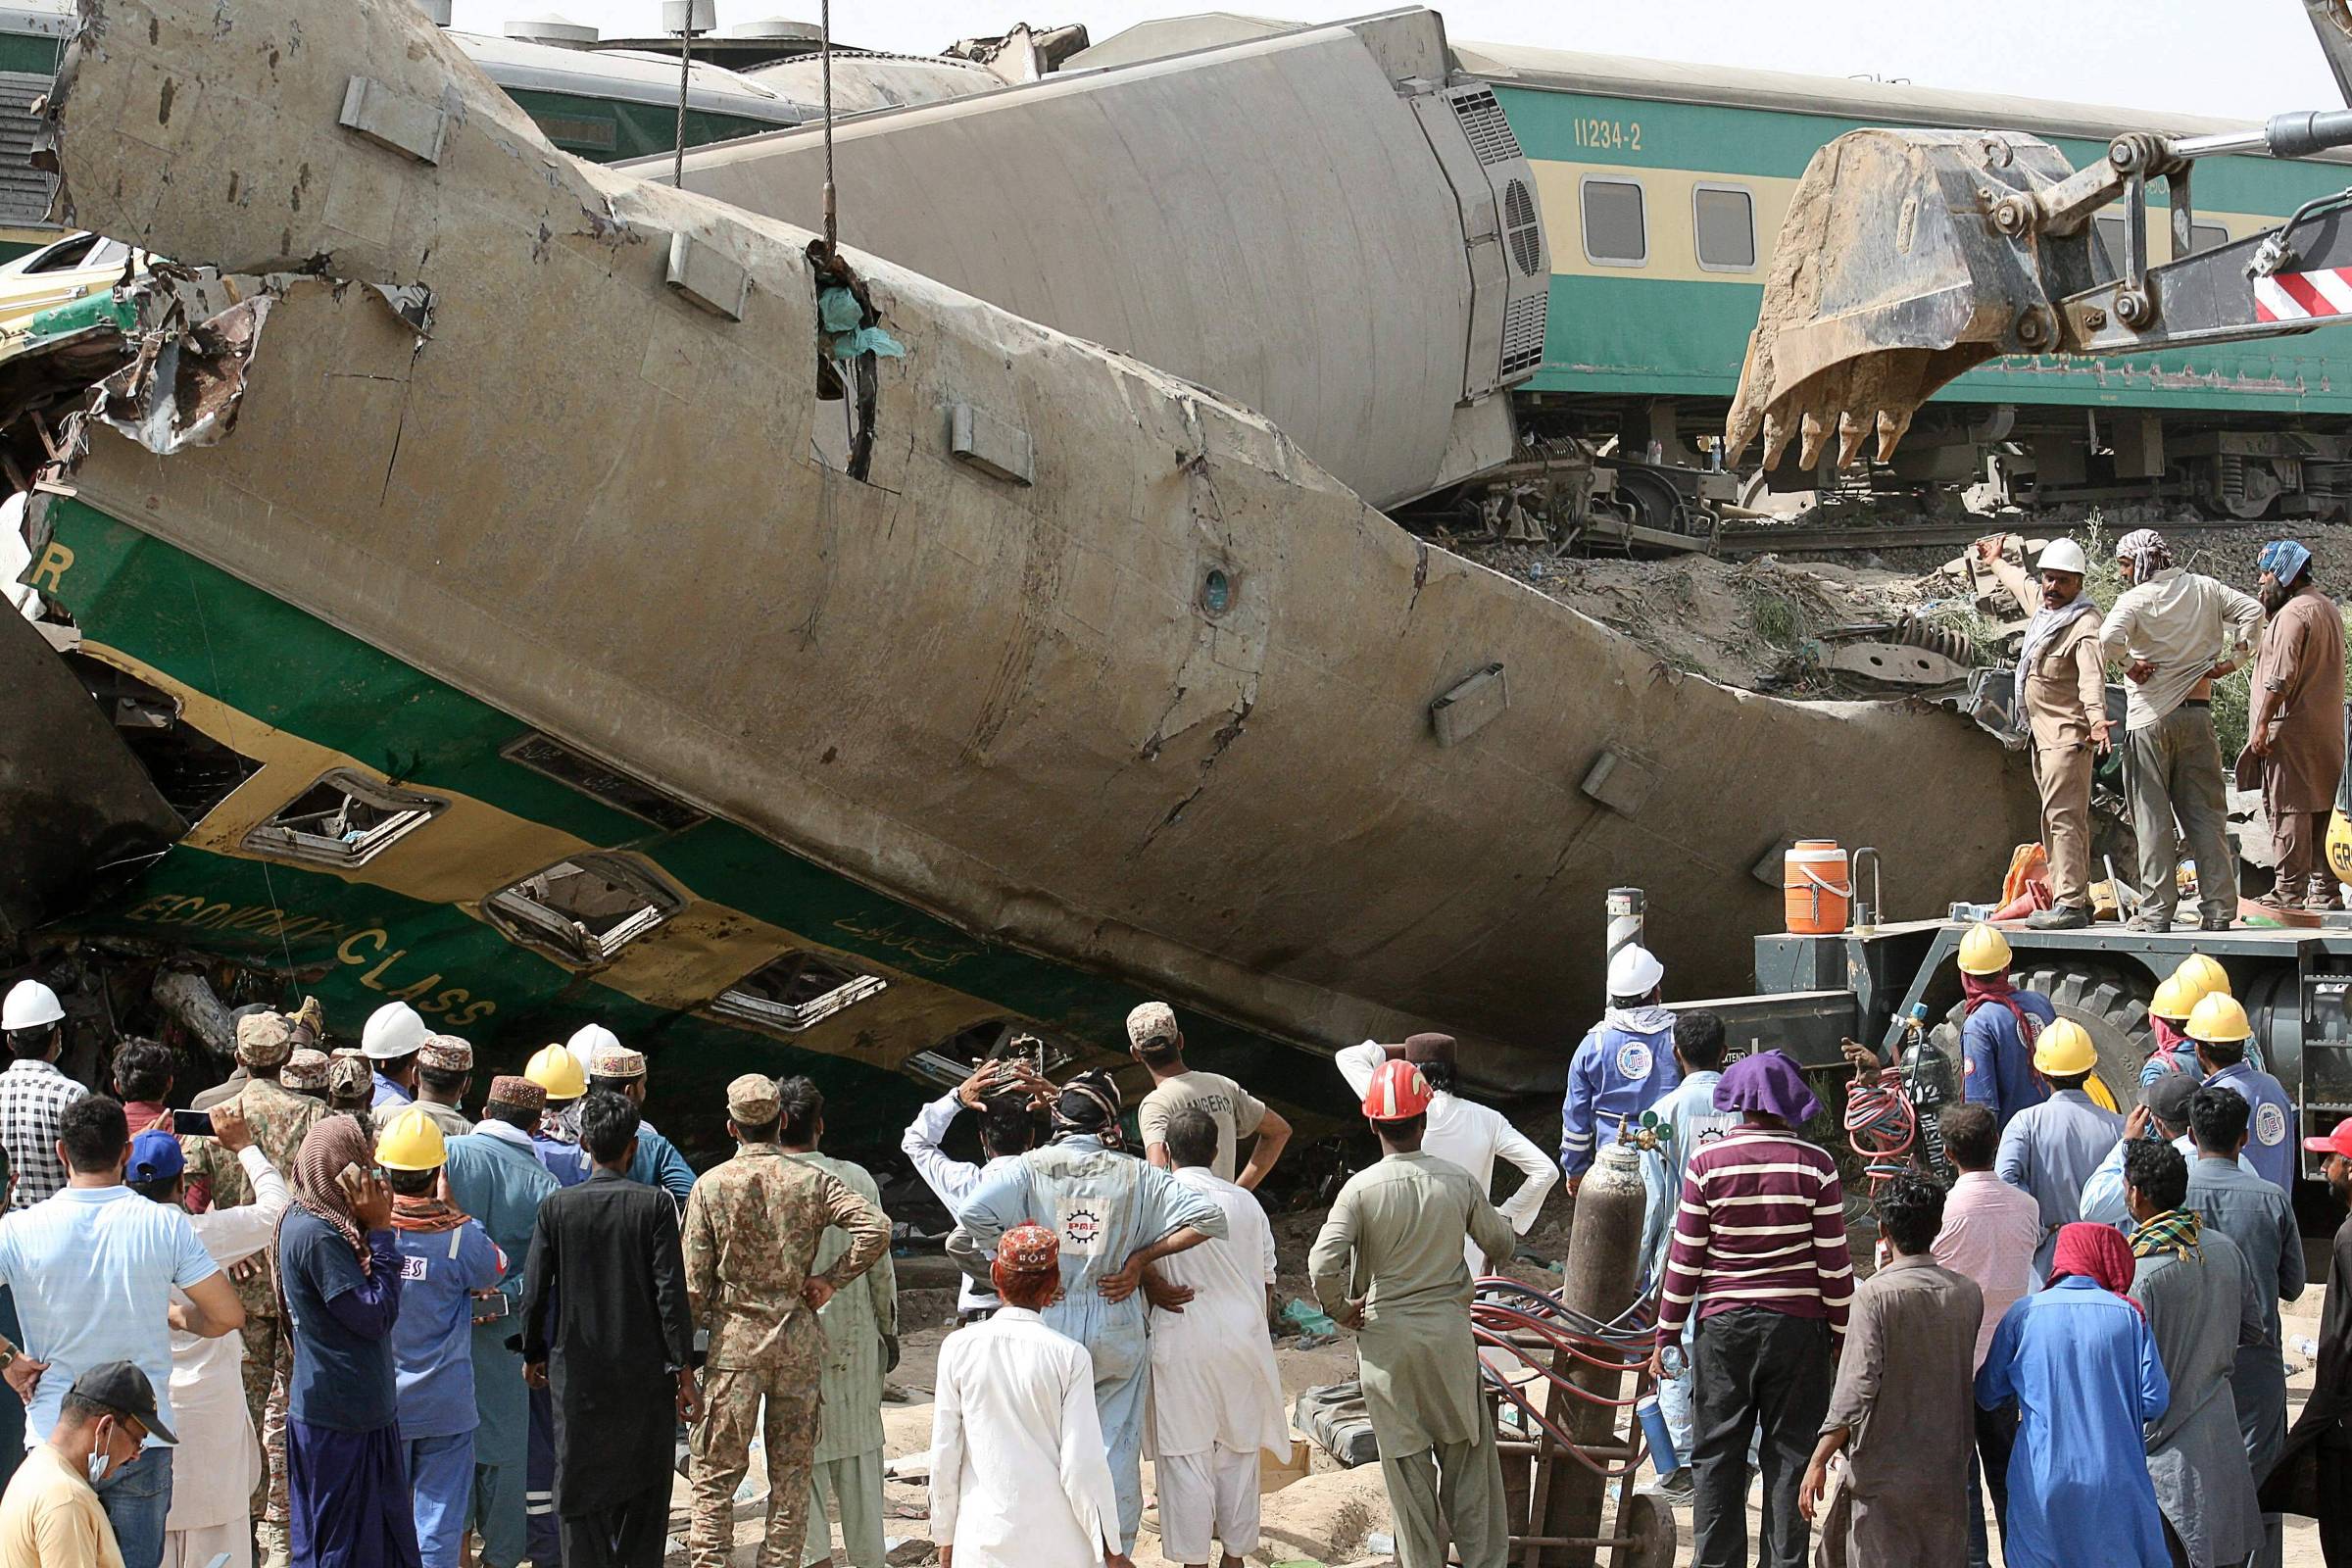 Colisão entre trens de passageiros deixa ao menos 36 mortos no Paquistão